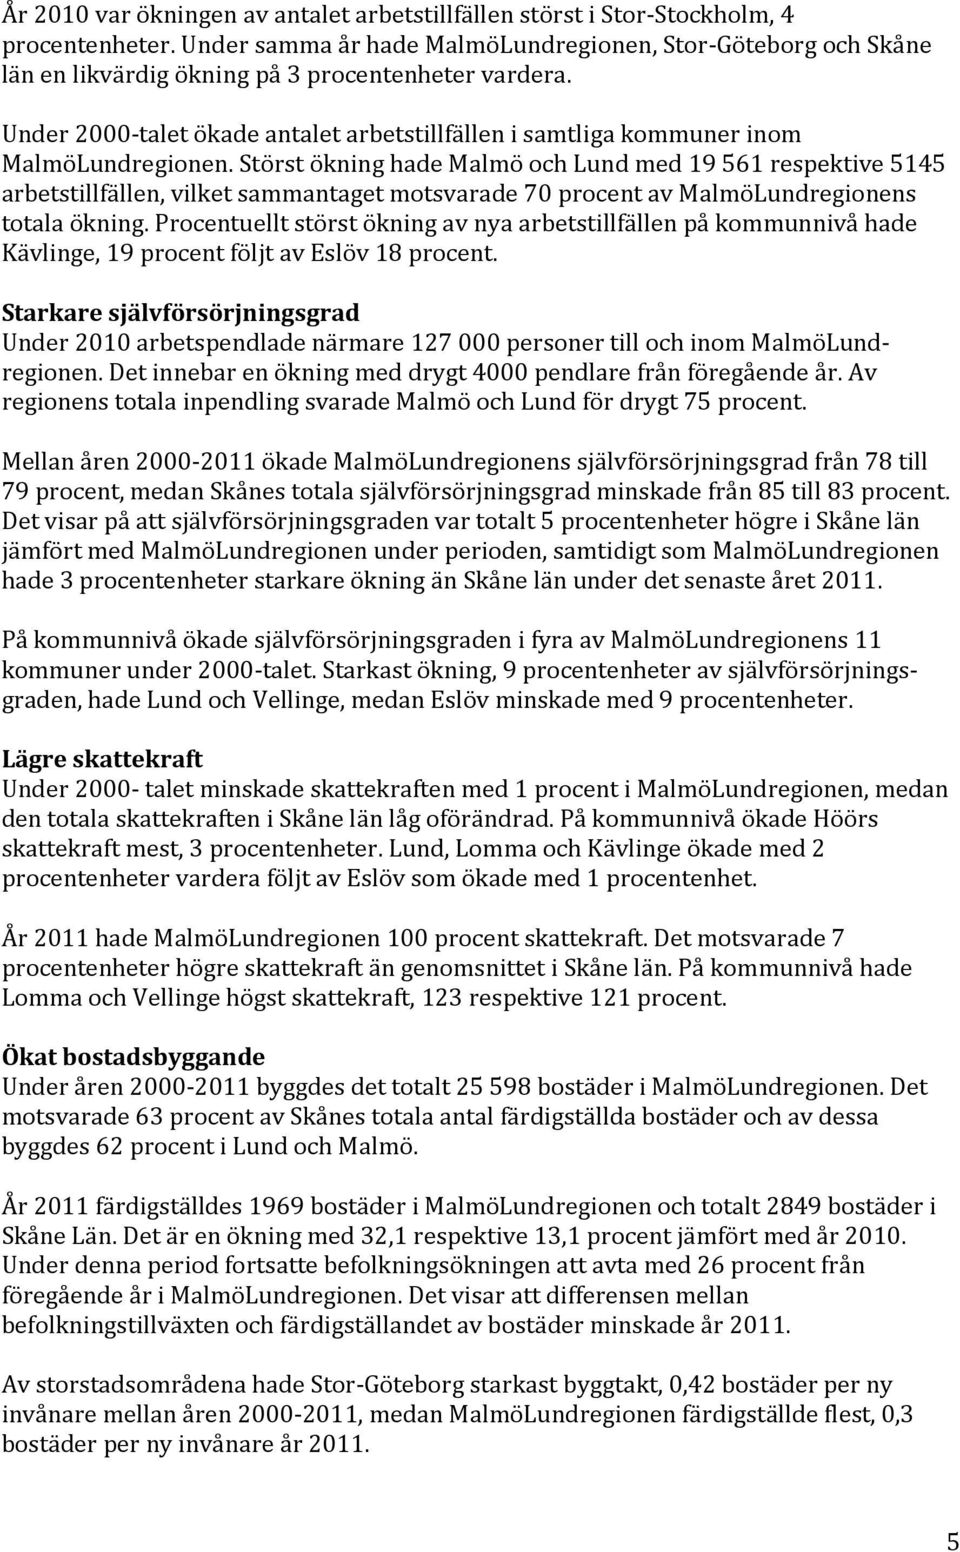 Under 2000-talet ökade antalet arbetstillfällen i samtliga kommuner inom MalmöLundregionen.